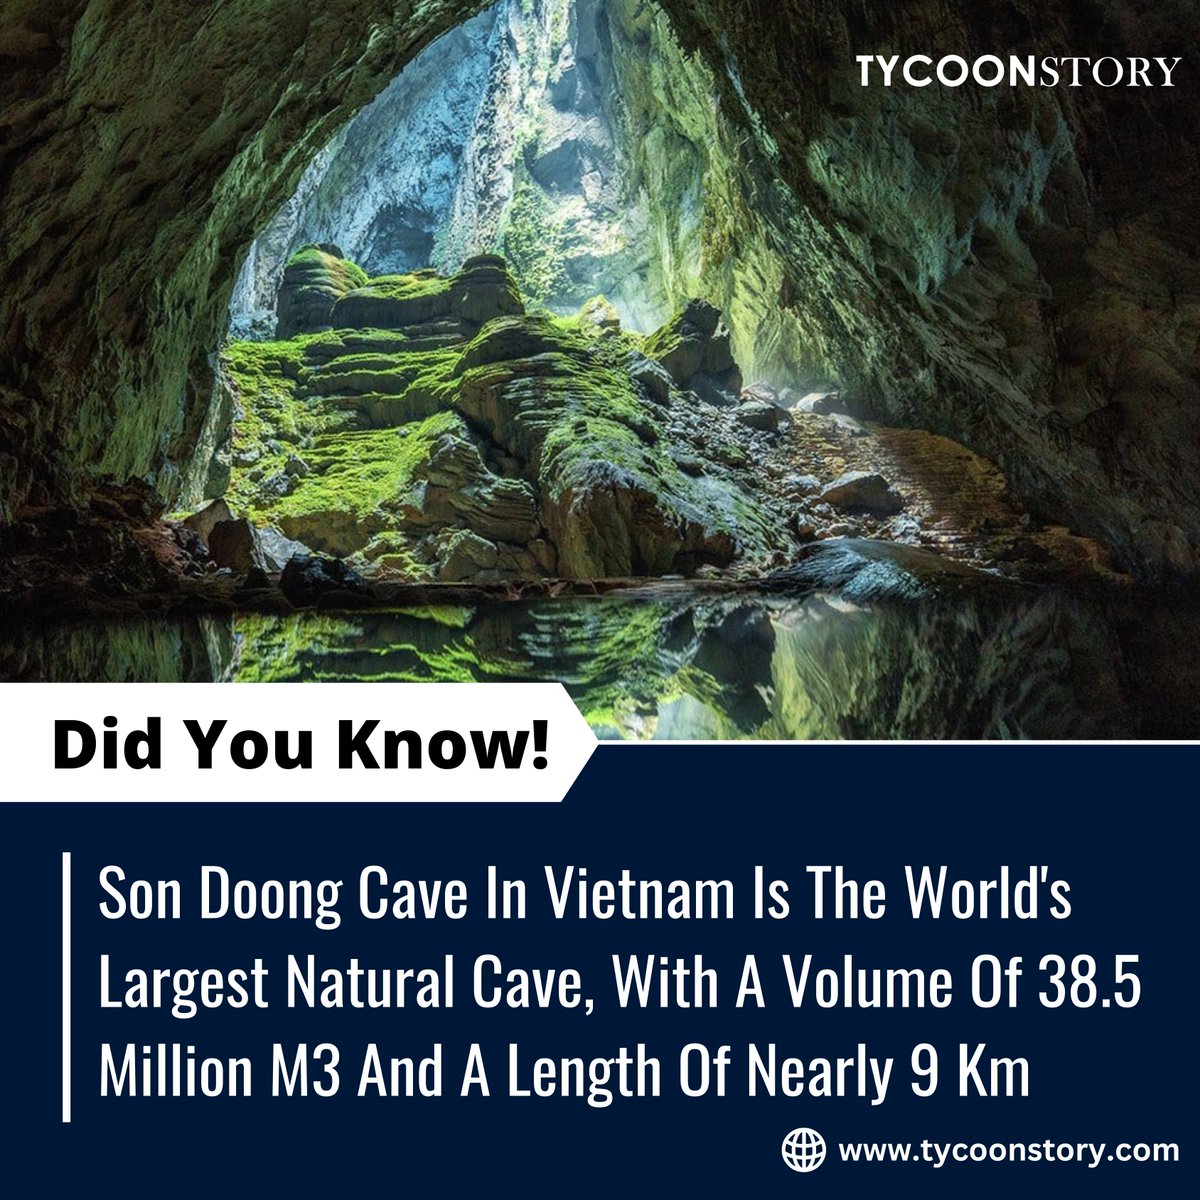 #DidYouKnow

#sondoongcave #vietnamtravel #caveexploration #naturalwonders #adventuretravel #explorevietnam #caveofwonders #largestcave #caveadventures #spectacularcaves #outdooradventures #NatureMarvels #cavediscovery